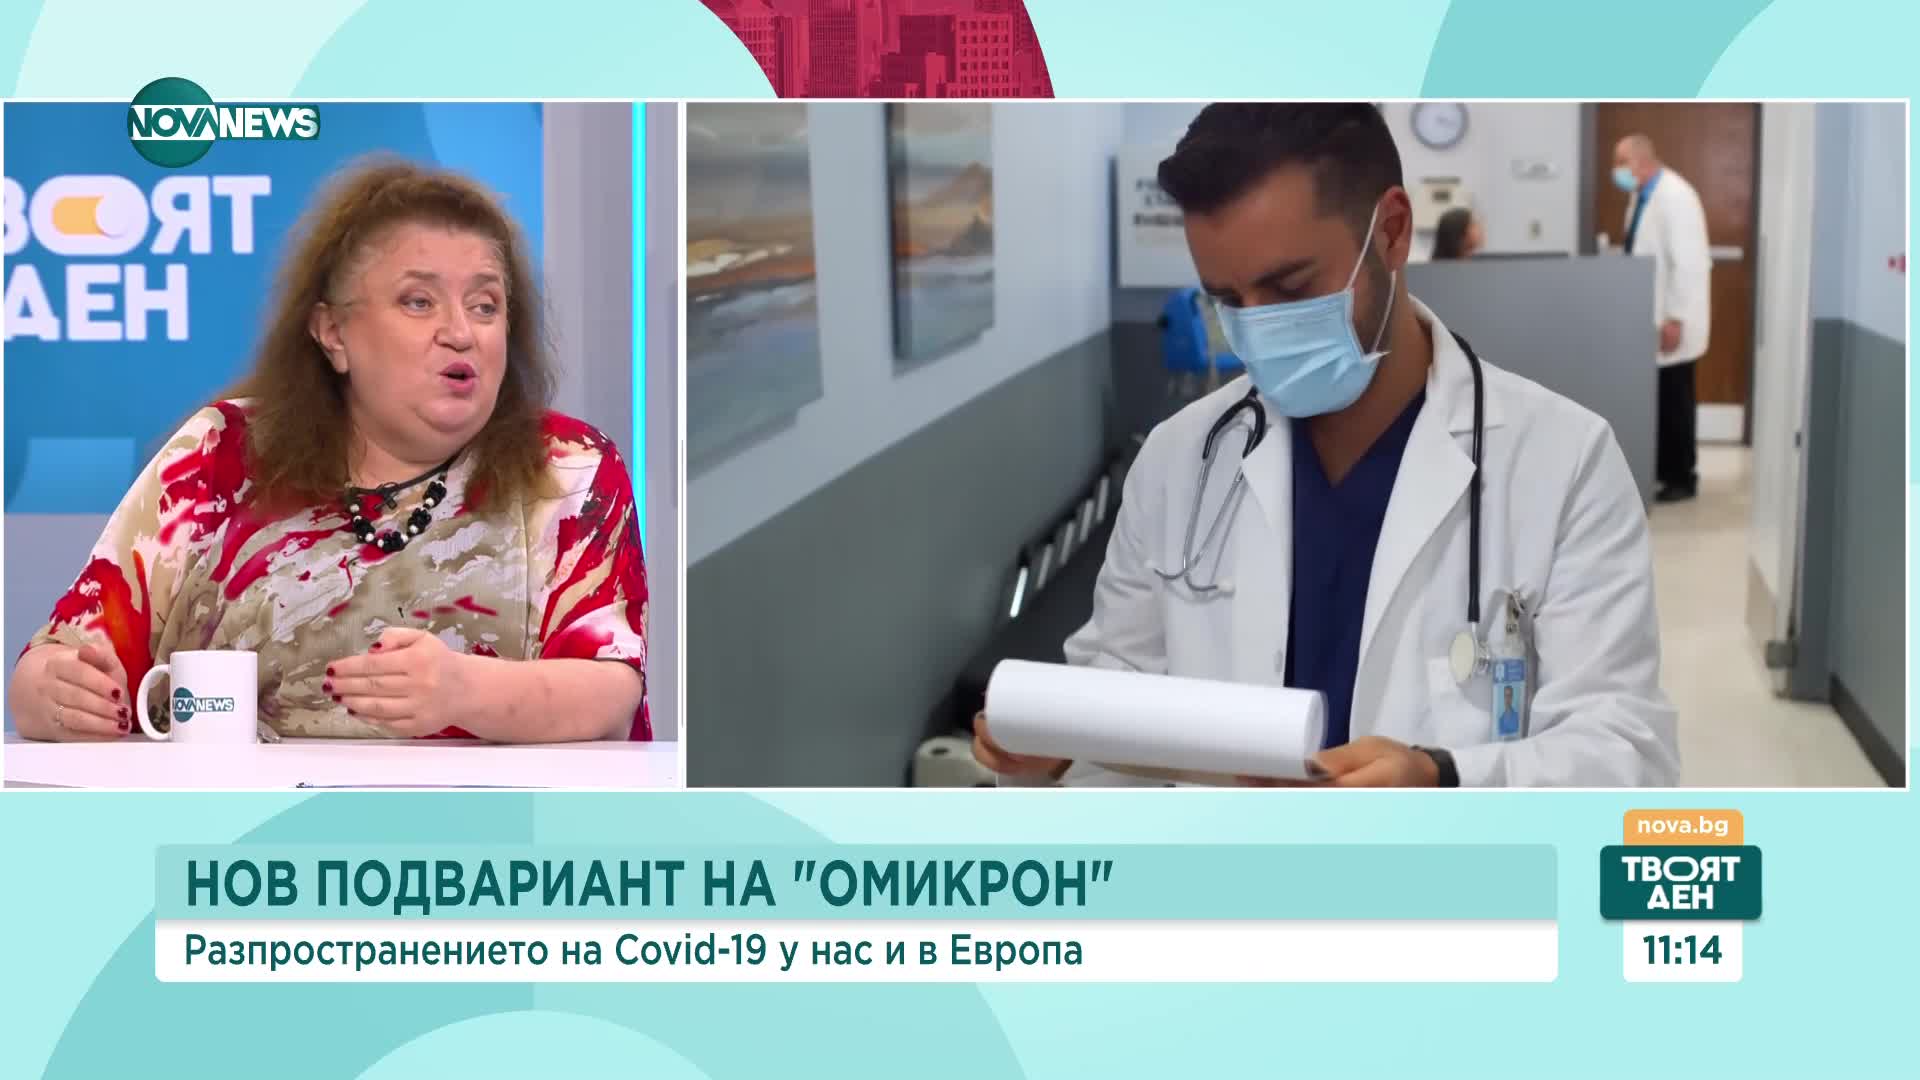 Радостина Александрова: Няма повод за "драма" с новия подвариант на "Омикрон"